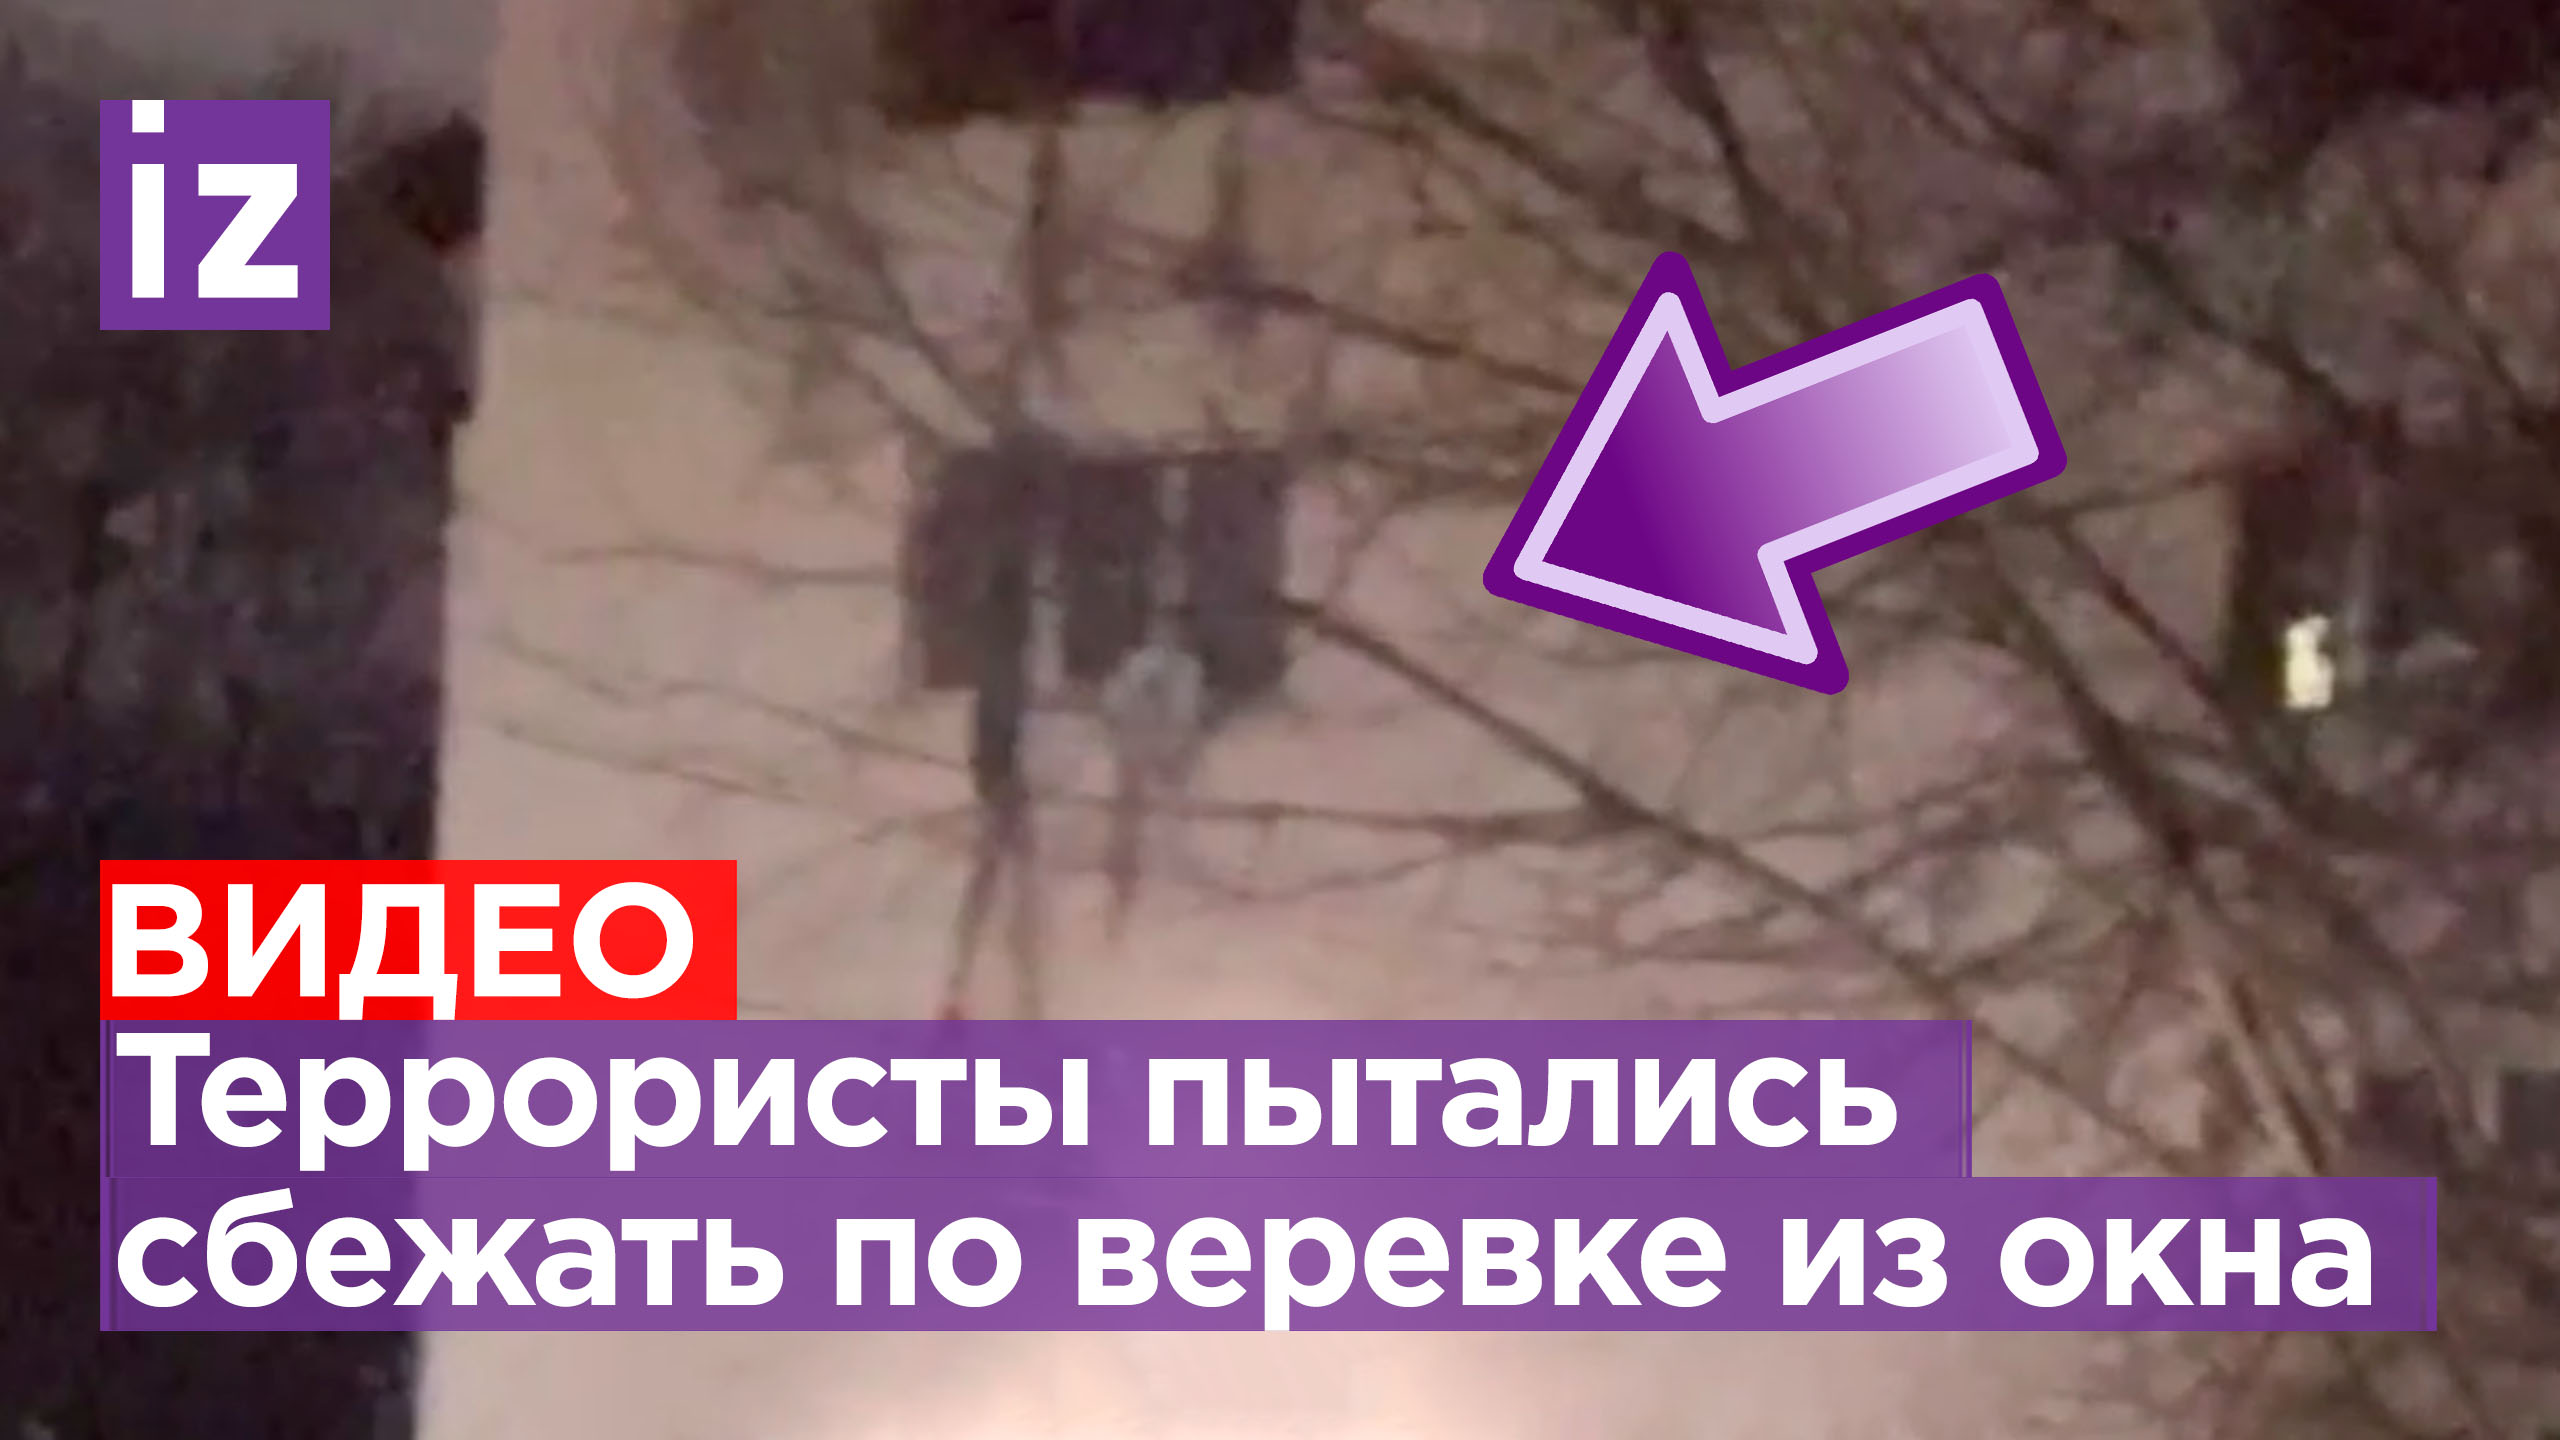 Террористы пытались сбежать из окна по веревке, но им не удалось: успешная работа спецназа ФСБ